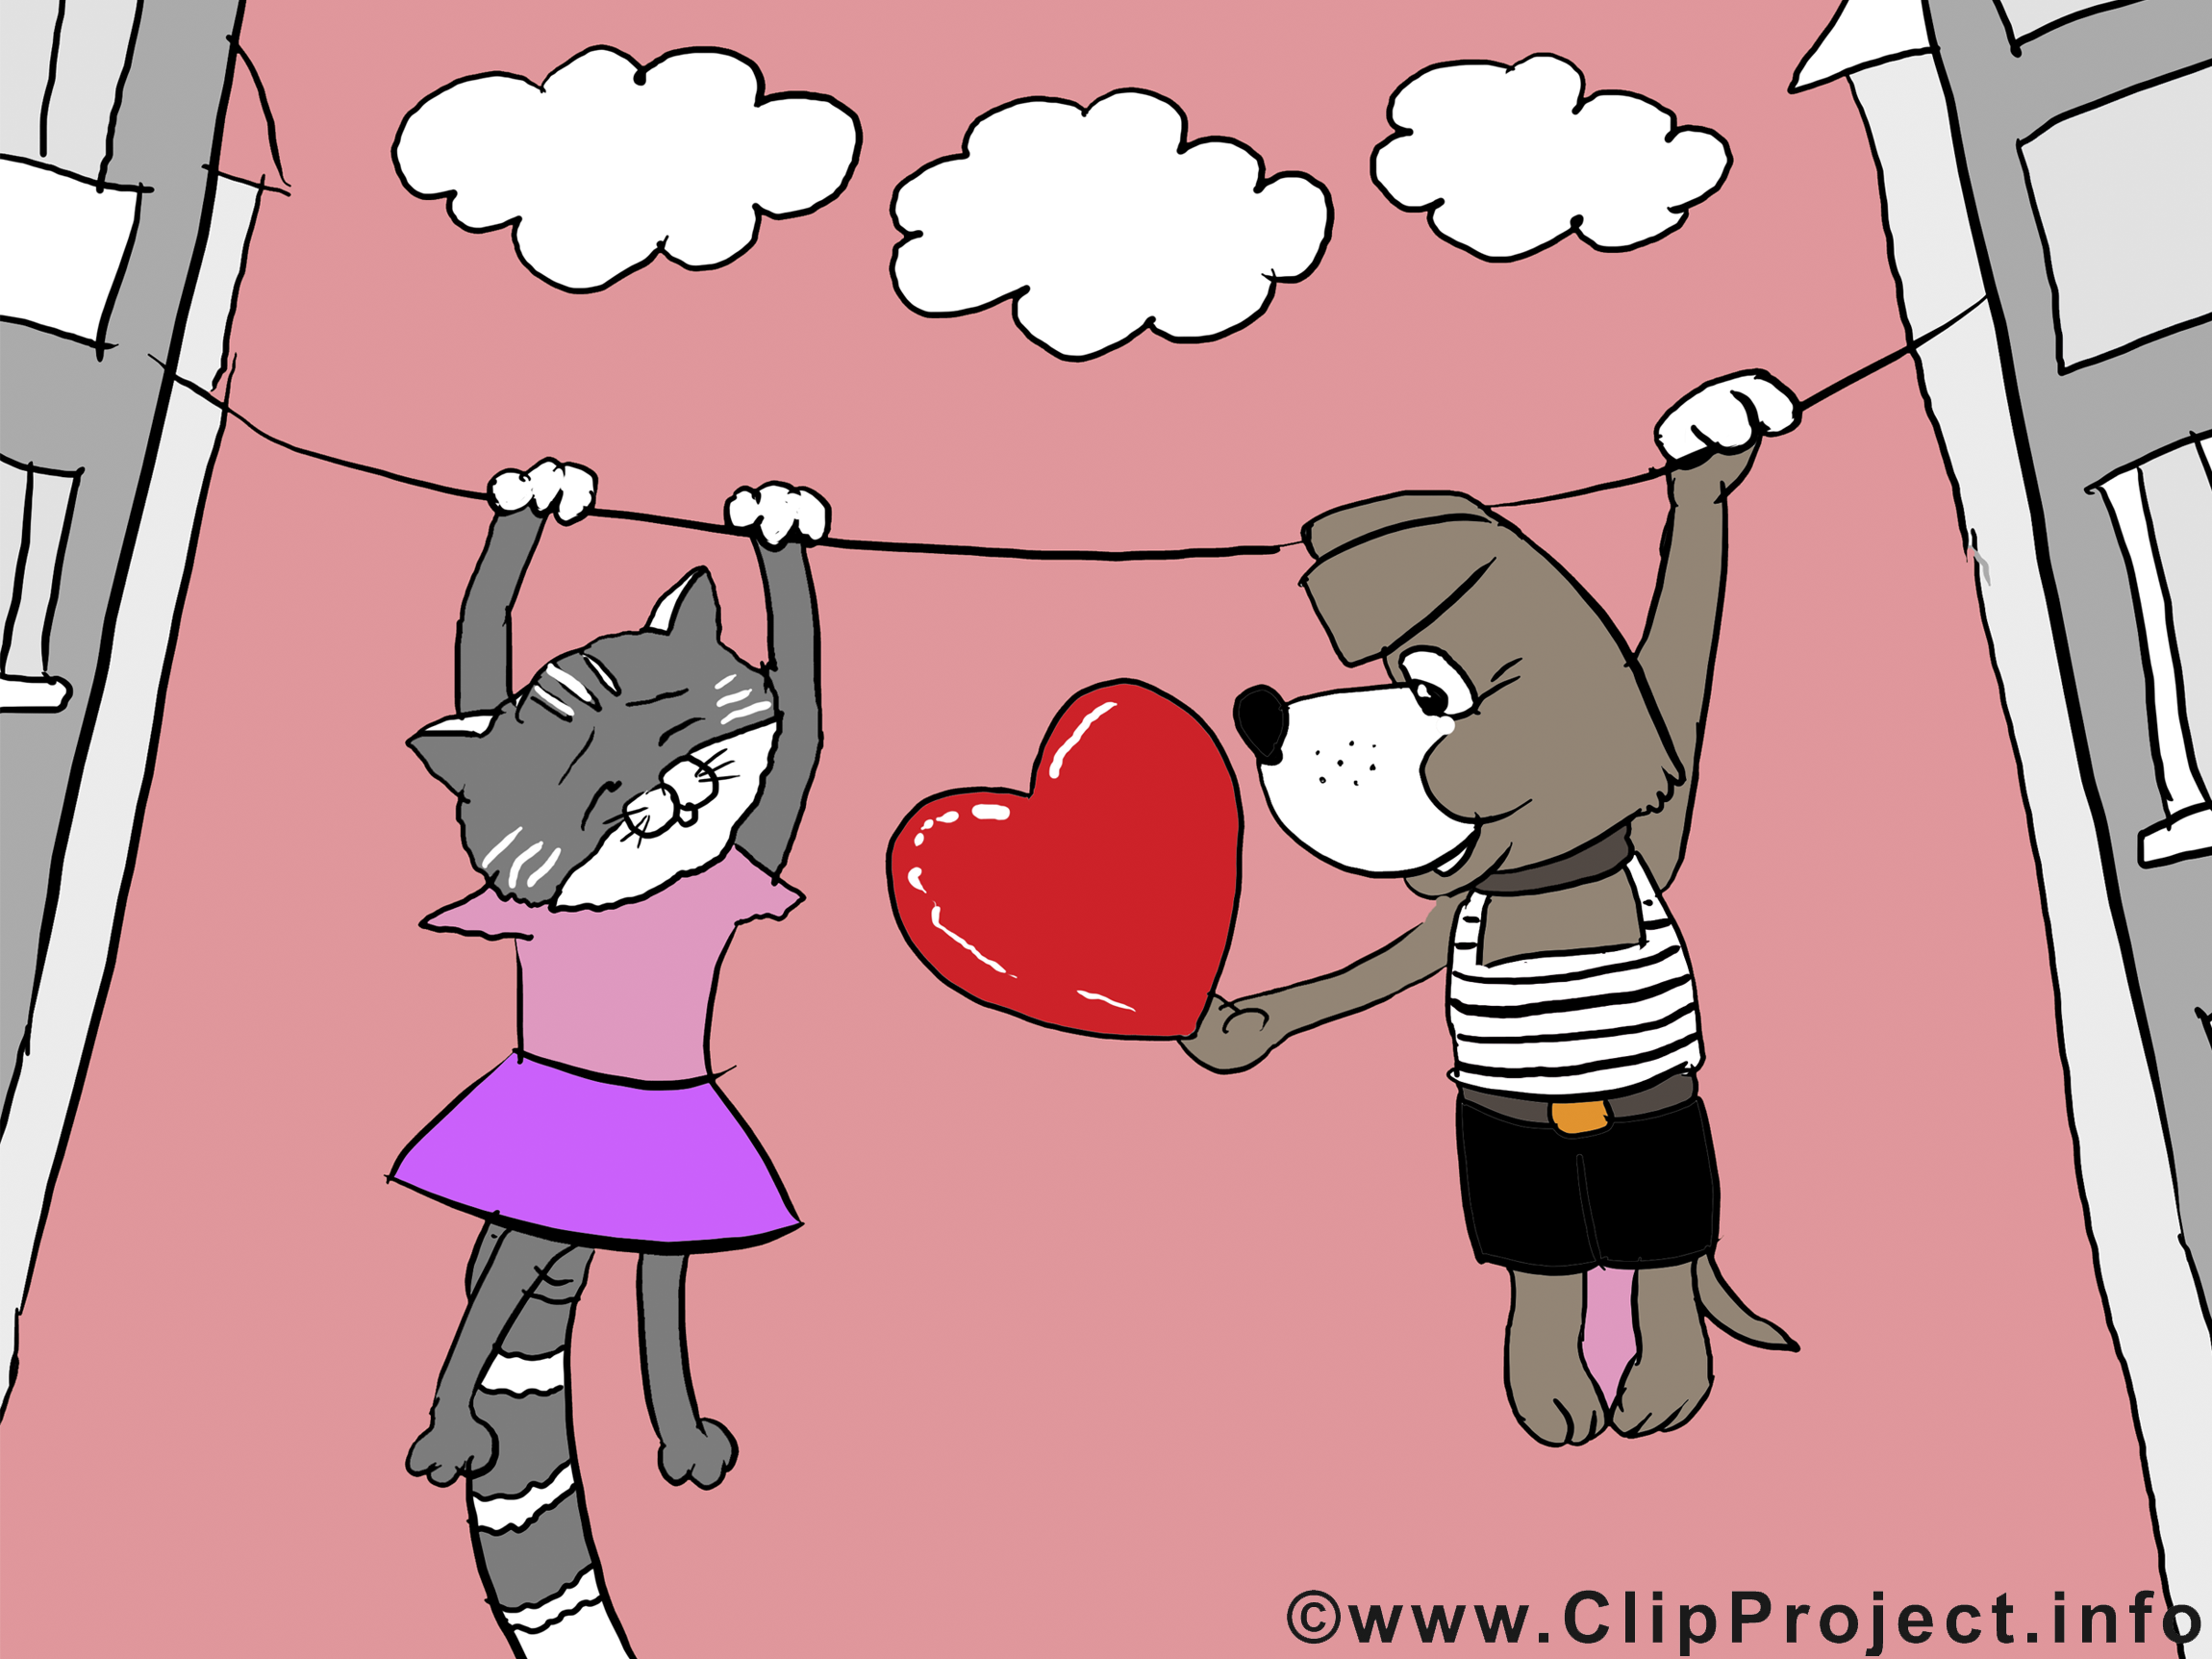 Chat et chien image - Saint-Valentin clipart